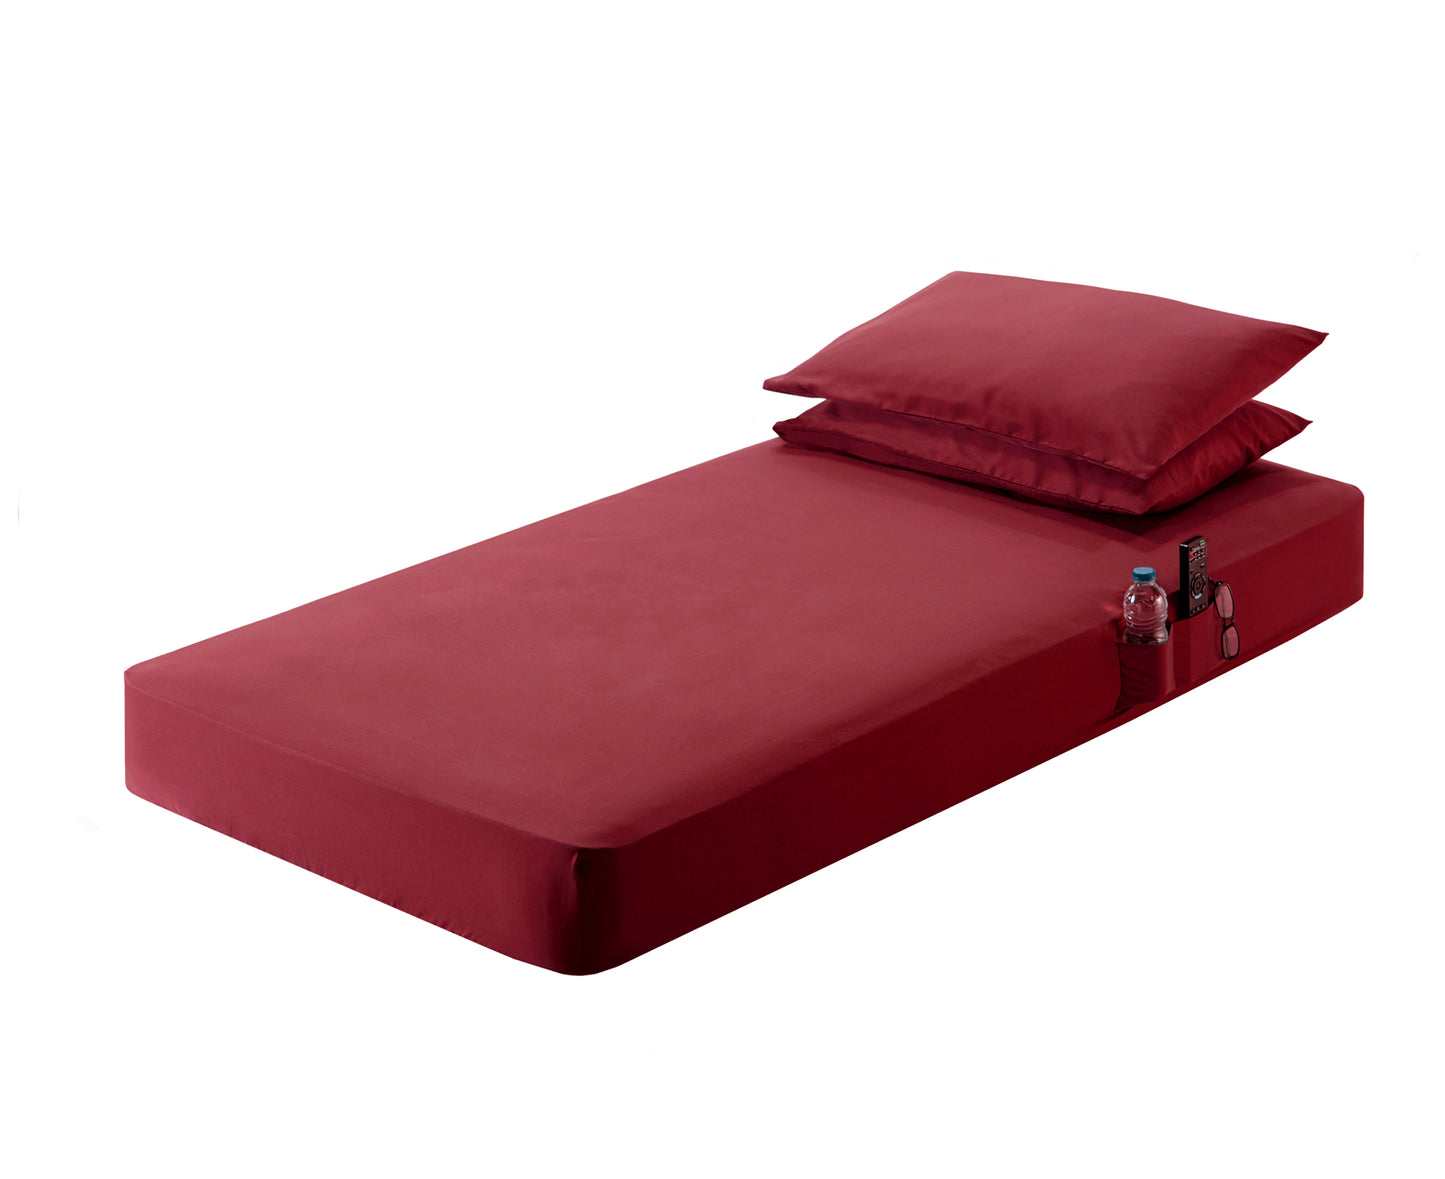 Bed Sheet Set – Fits Semi Truck/RV/Camper Mattresses (78"x28.5"x8.2")